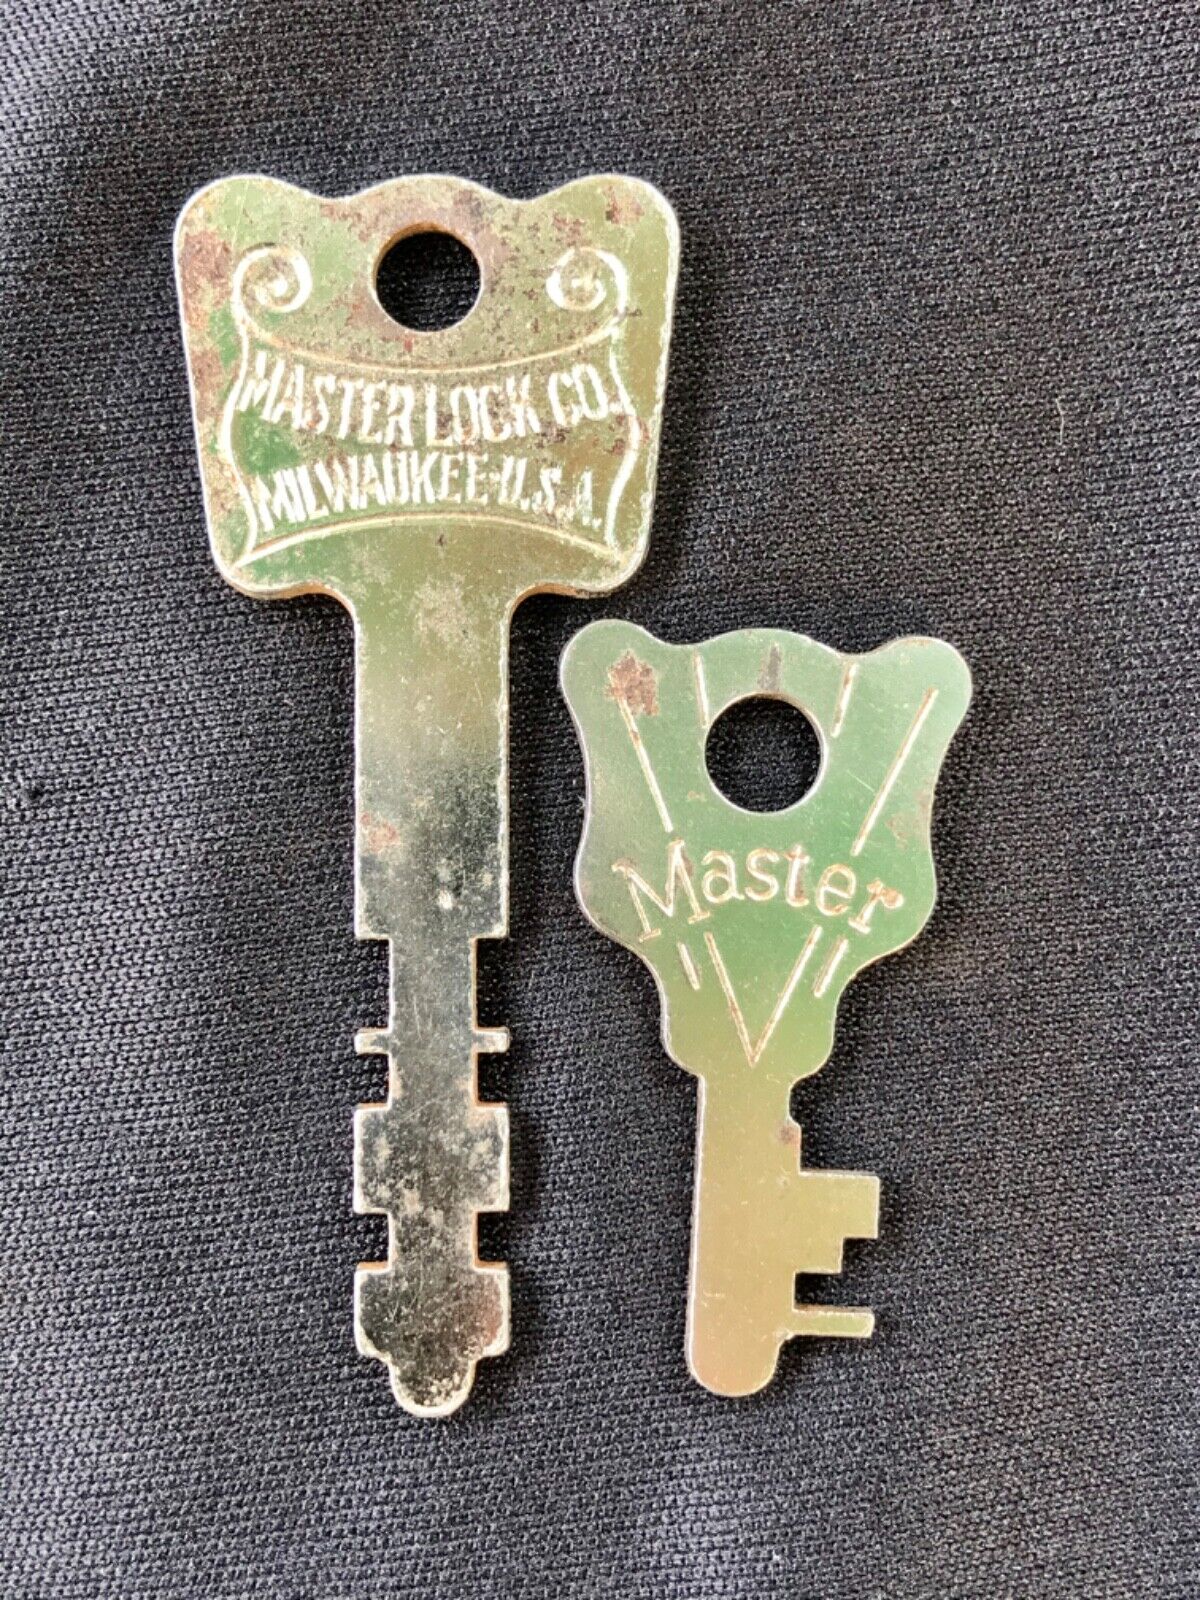 Lot Of 2 Vintage Antique Master Lock Co Keys, Flat Skeleton, Original (Group 2)